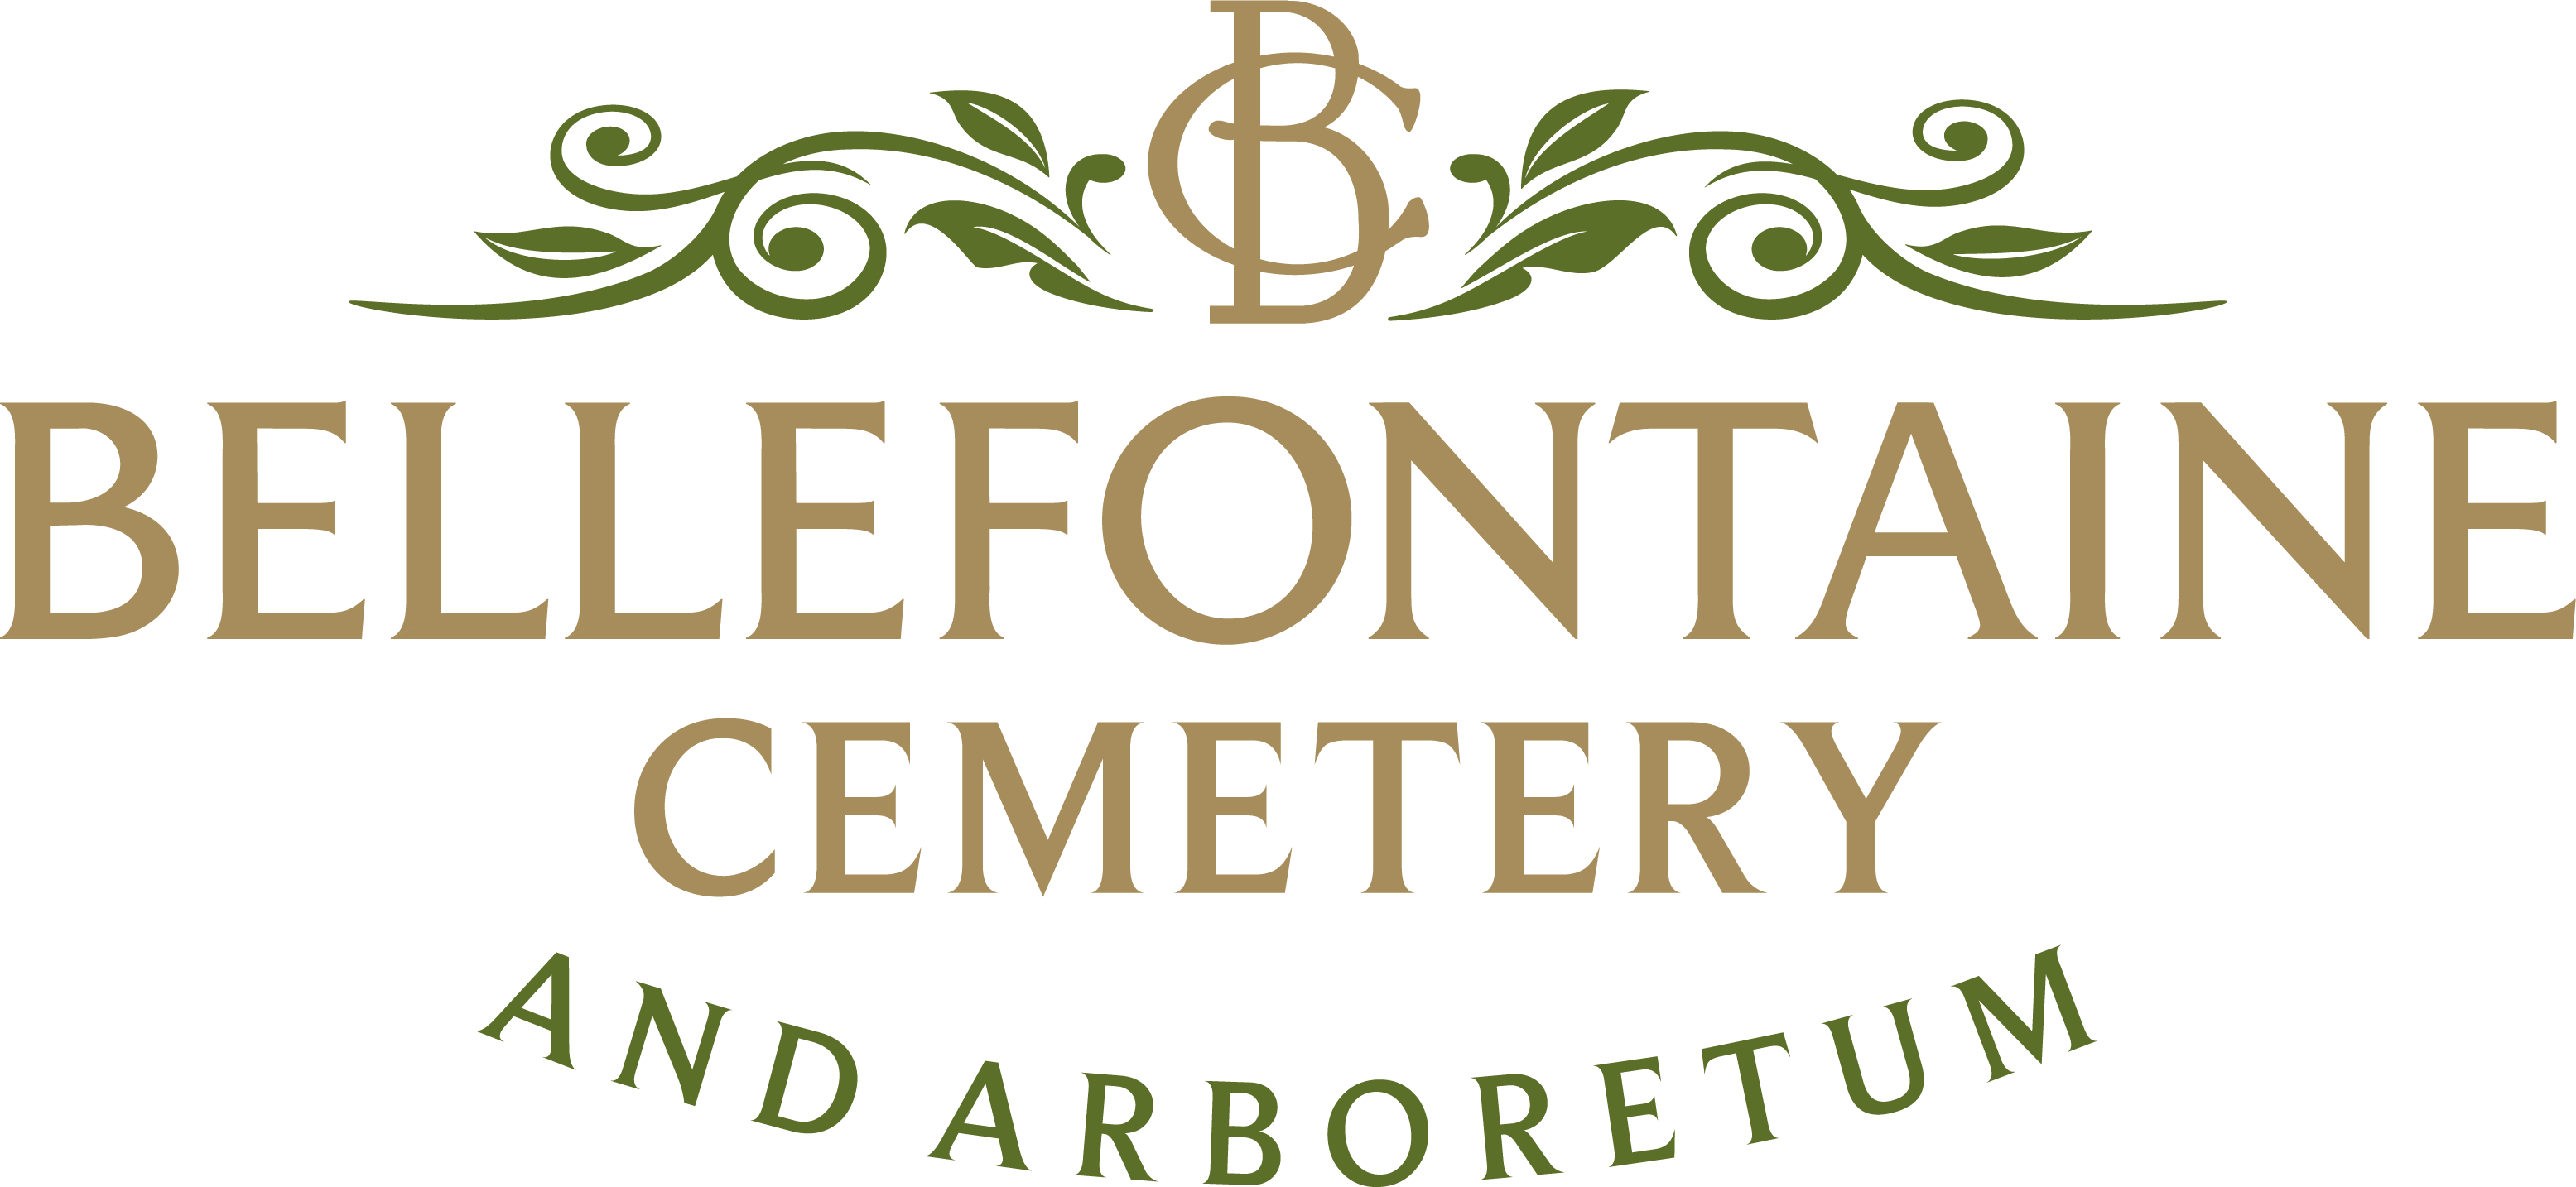 Bellefontaine Cemetery & Arboretum